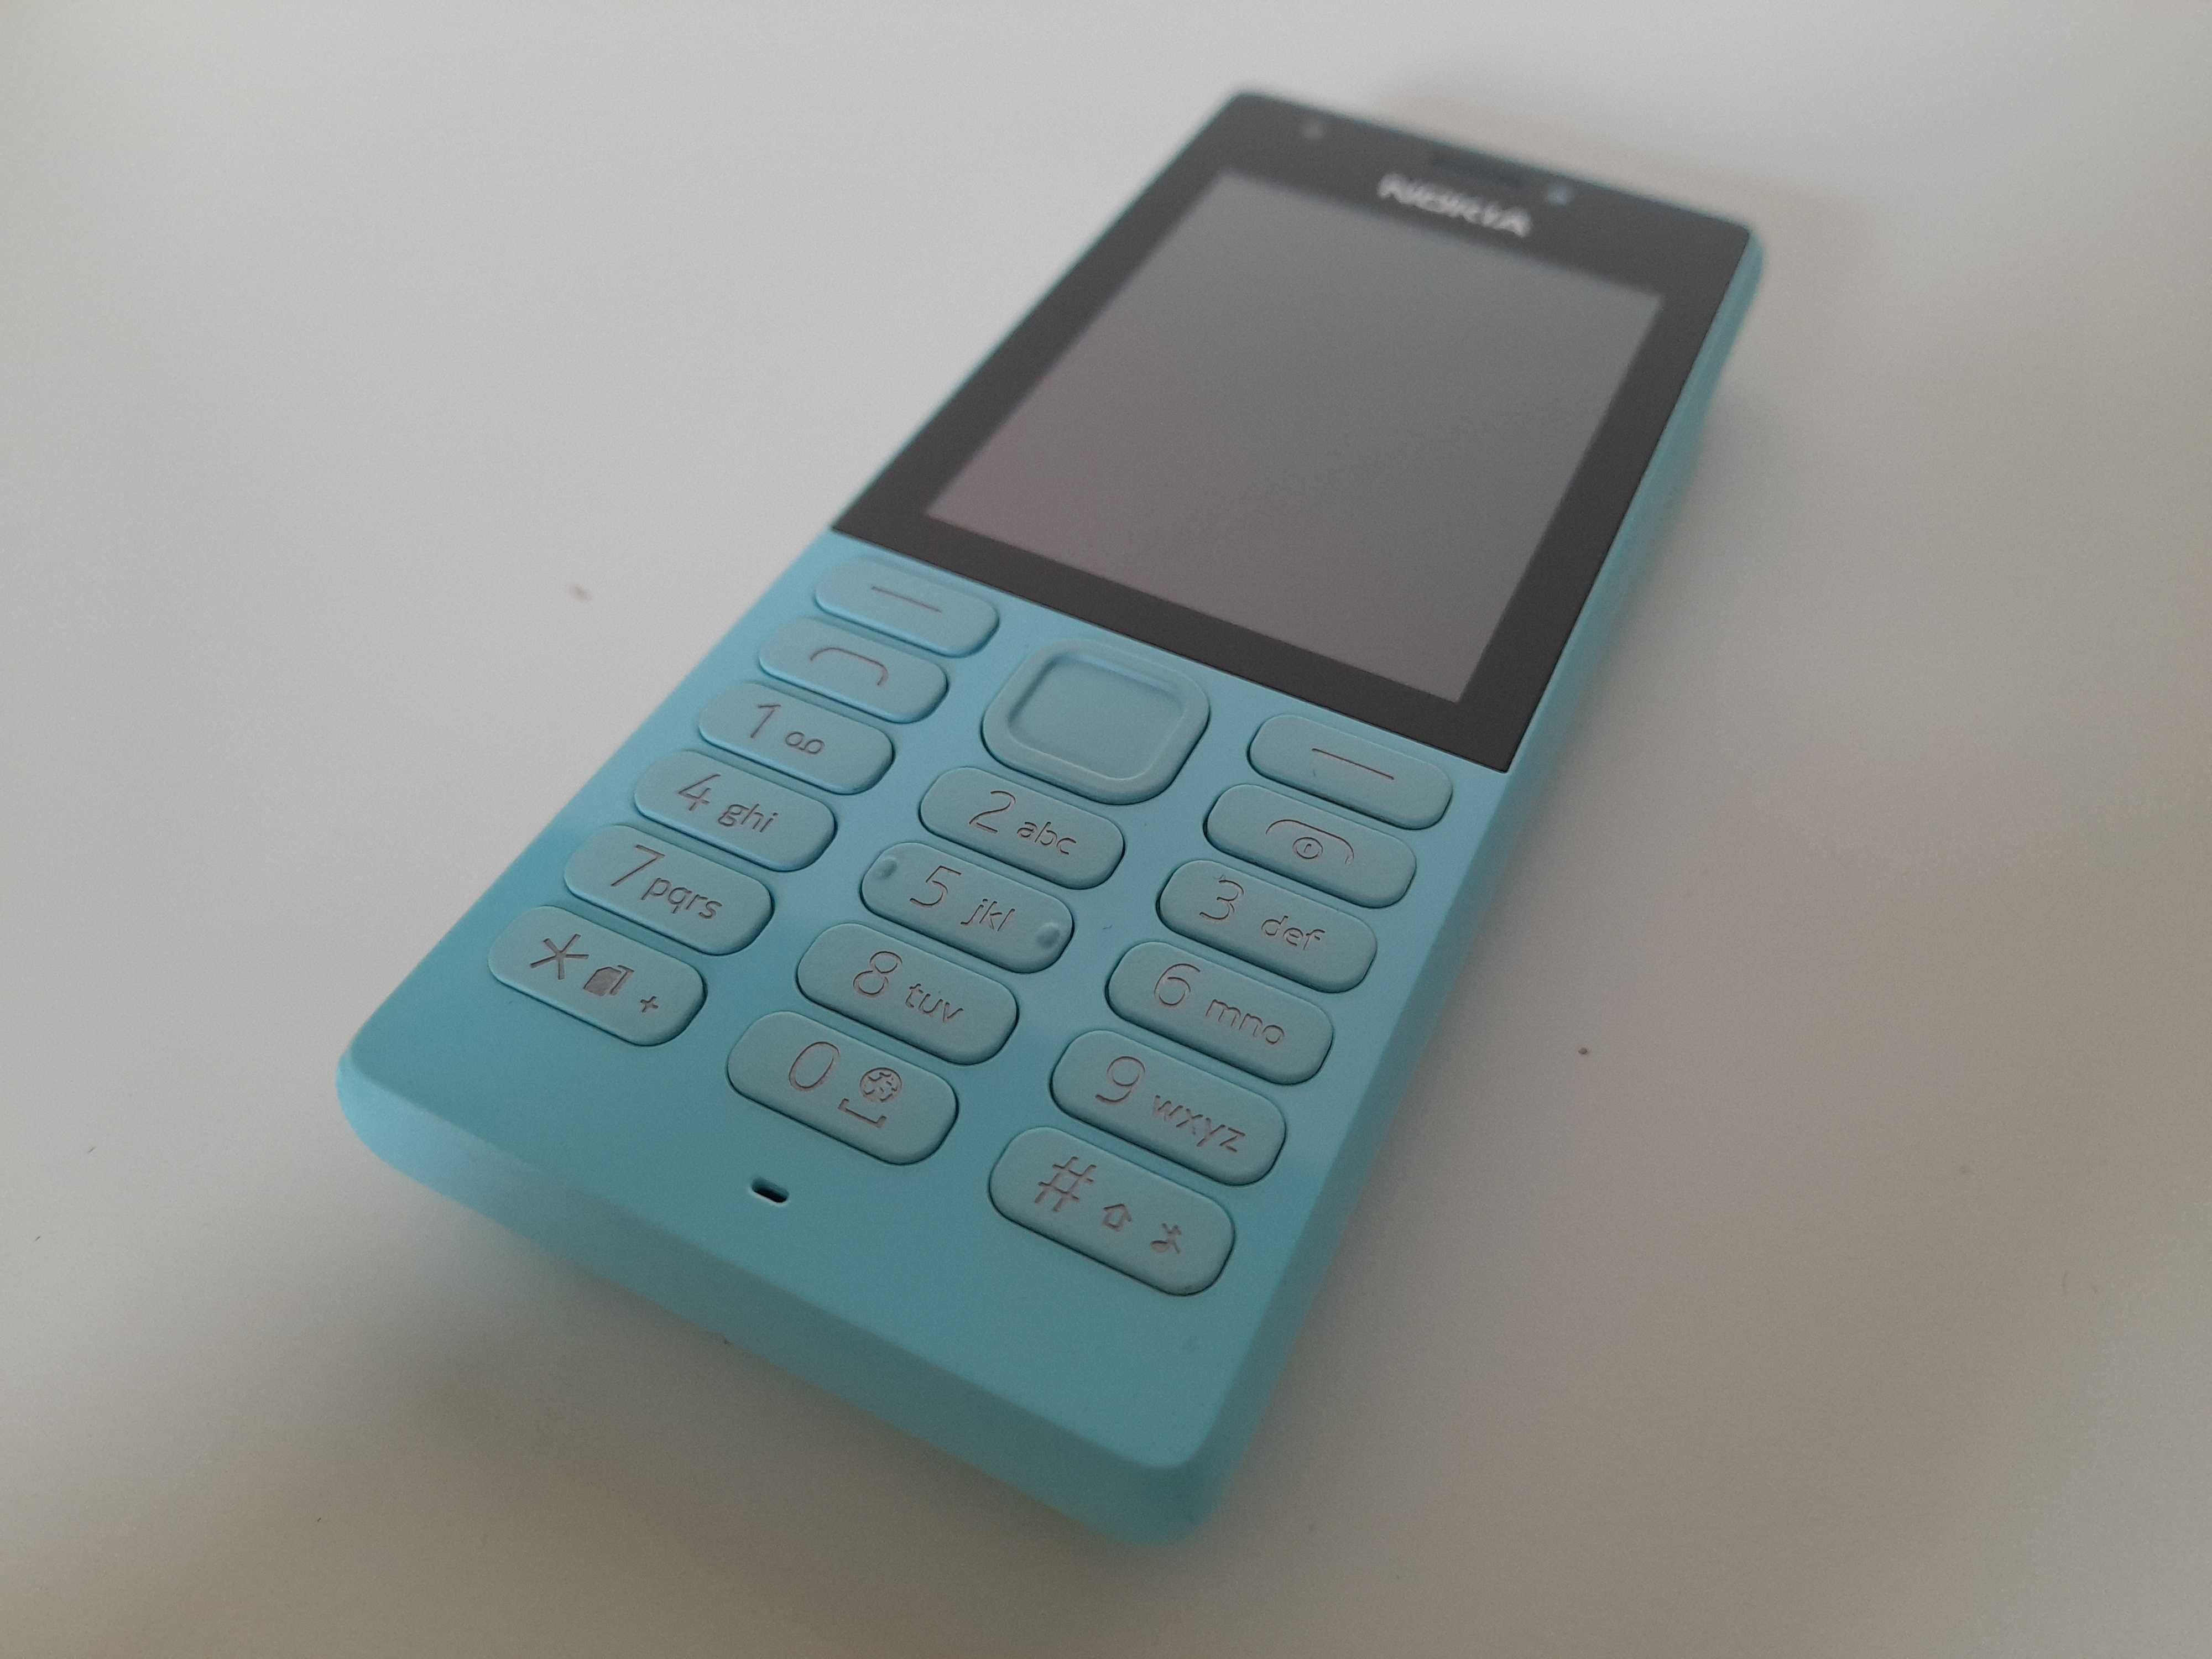 Oryginalny telefon NOKIA 216 Dual Sim niebieska sprawna stan 5 b.db